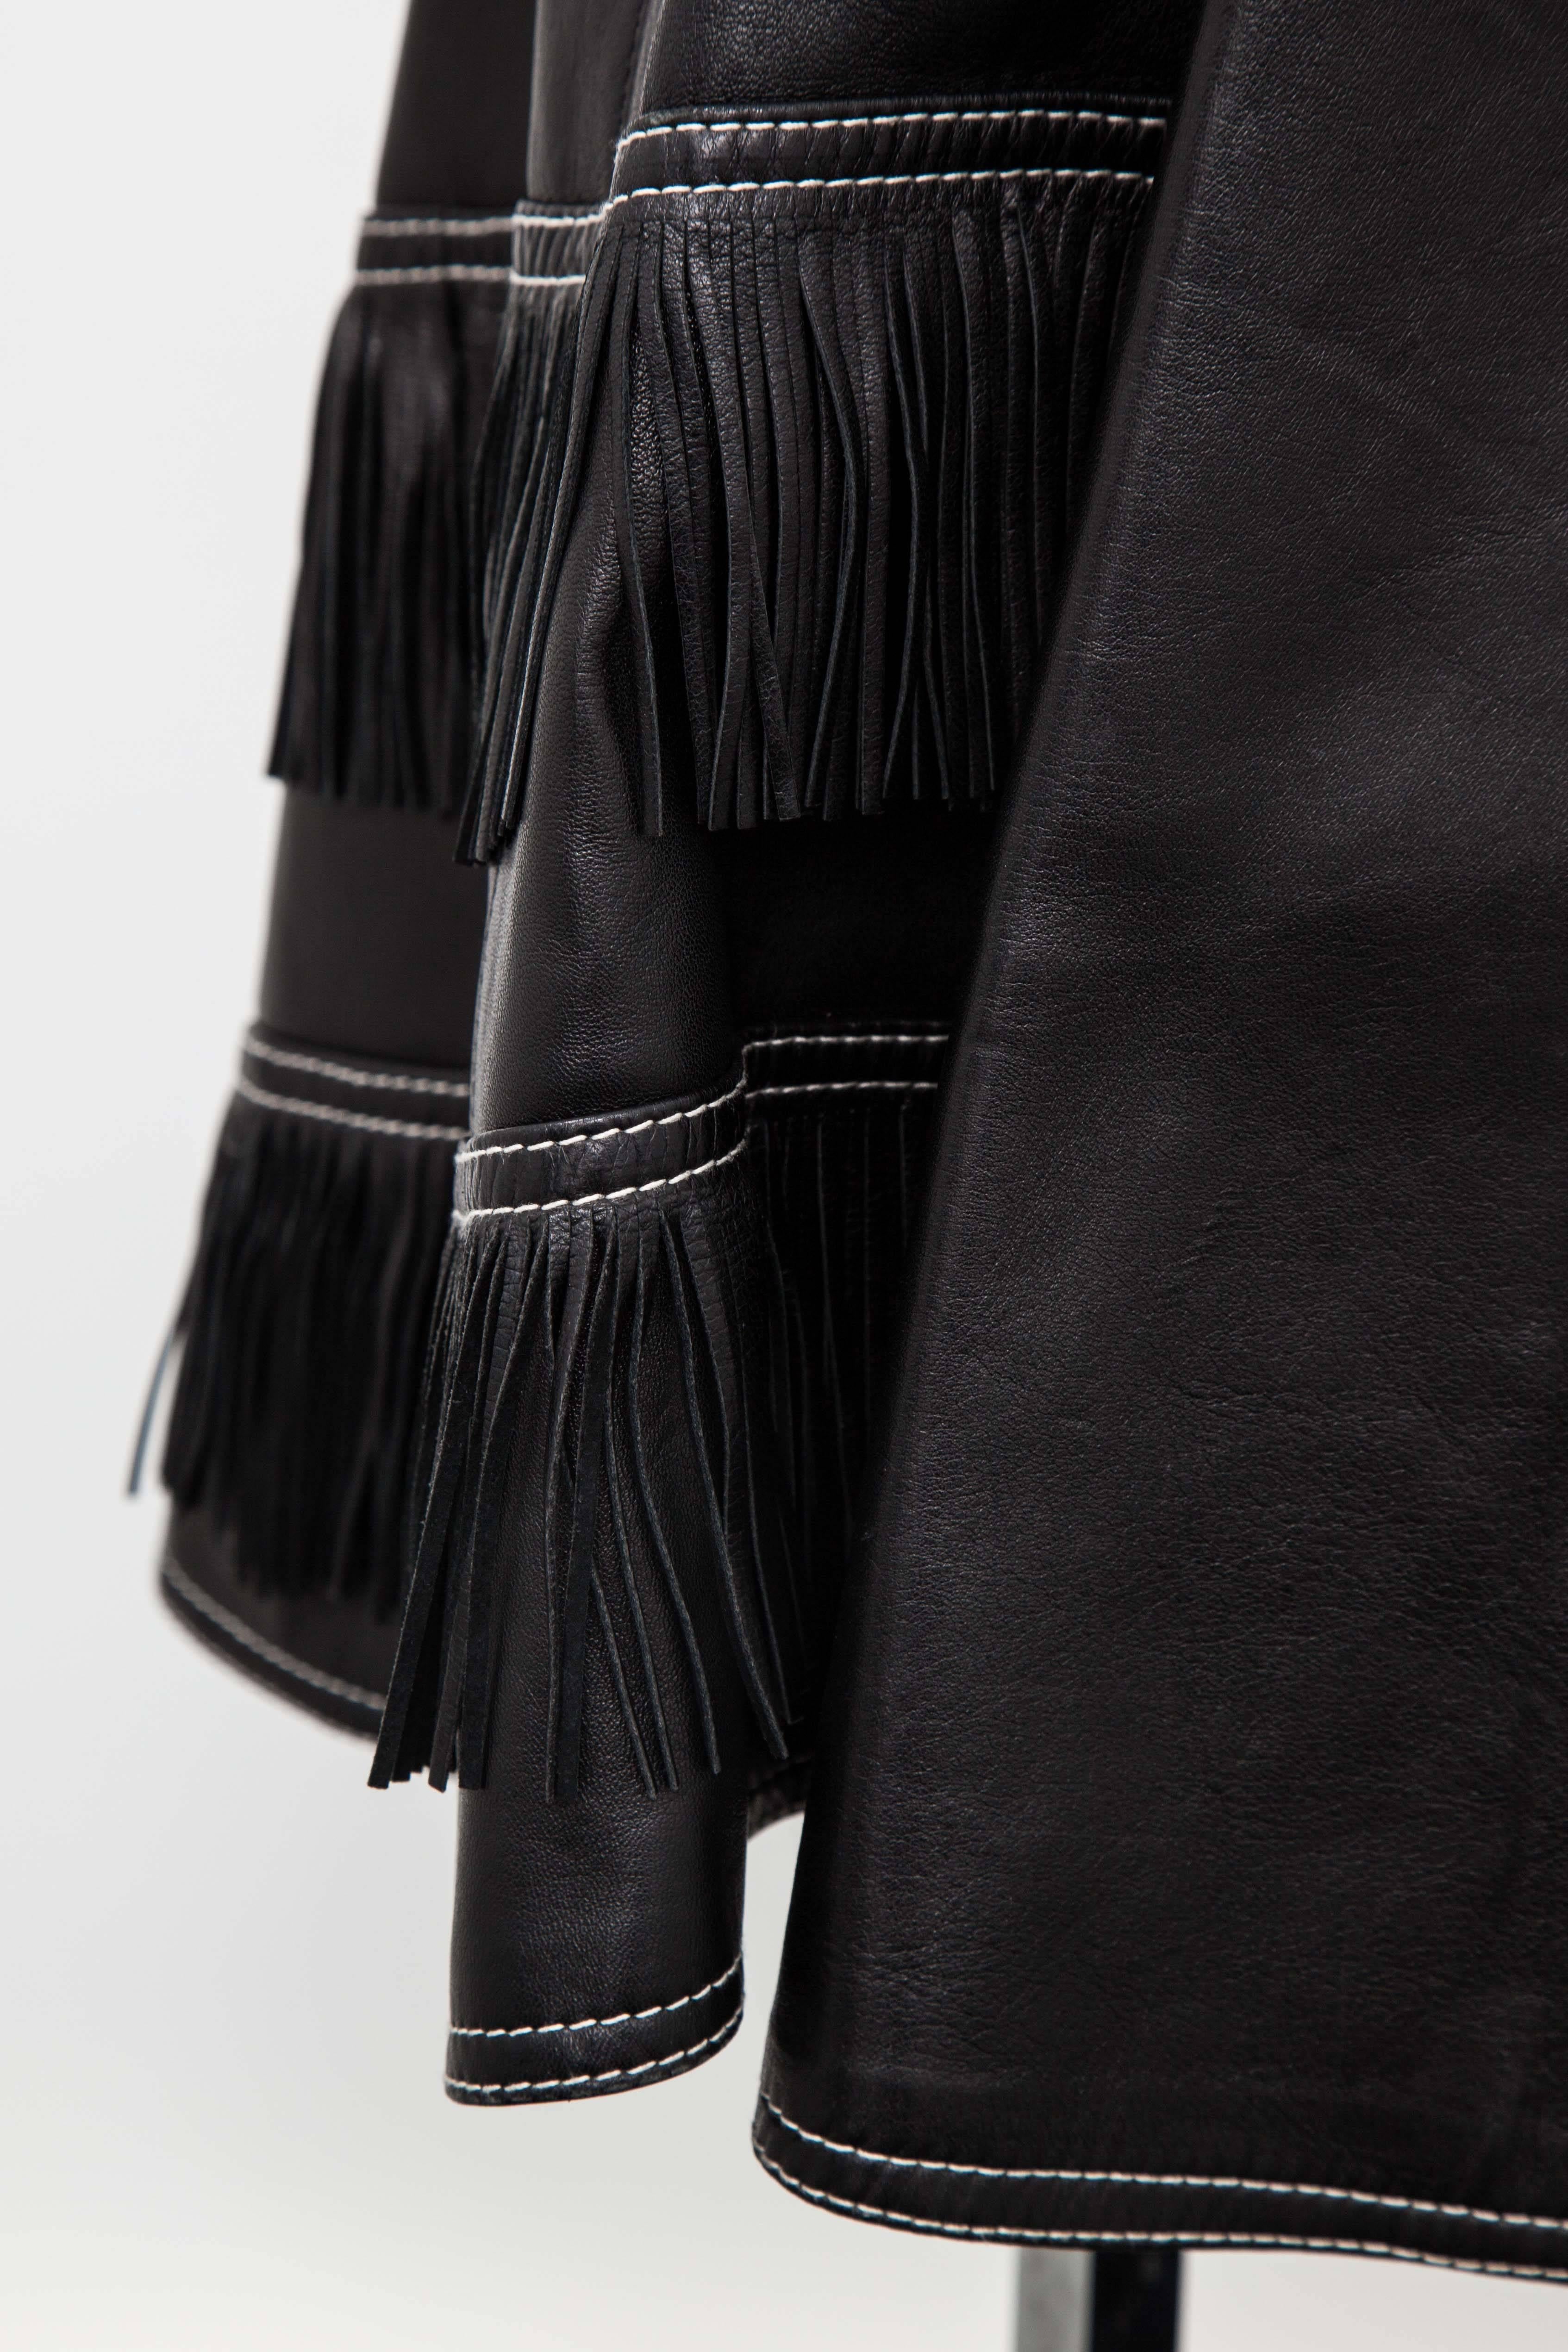 Gianni Versace Iconic 1992 Runway Black Leather Fringe Skirt 3